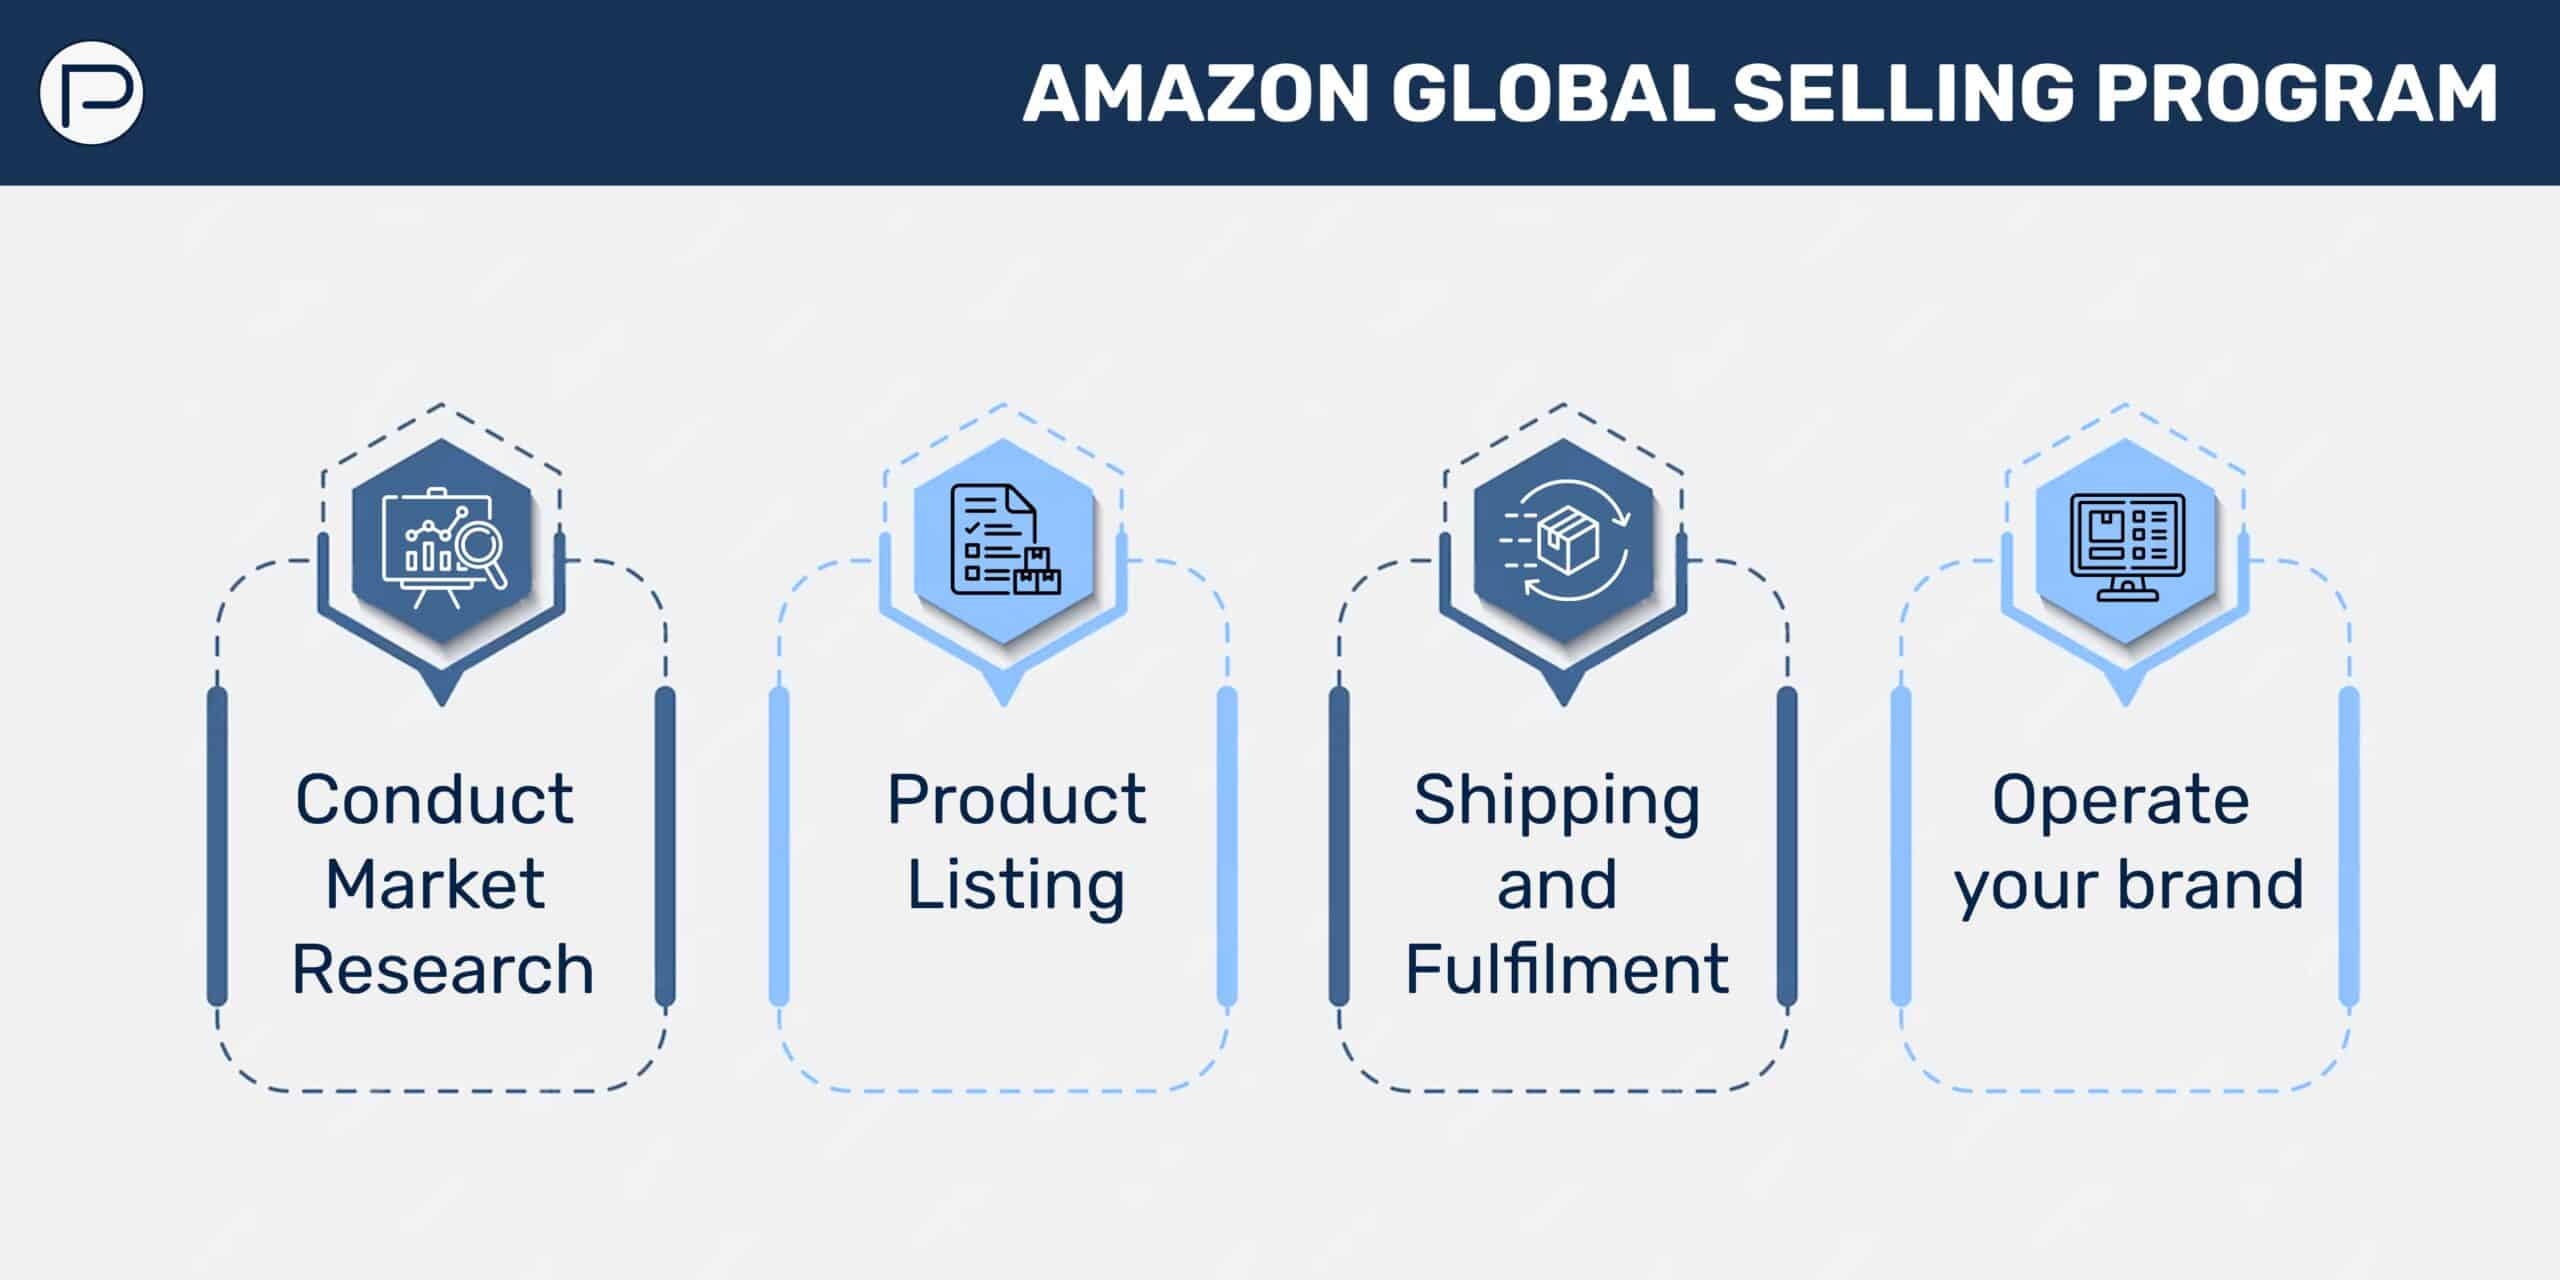 Amazon global selling program